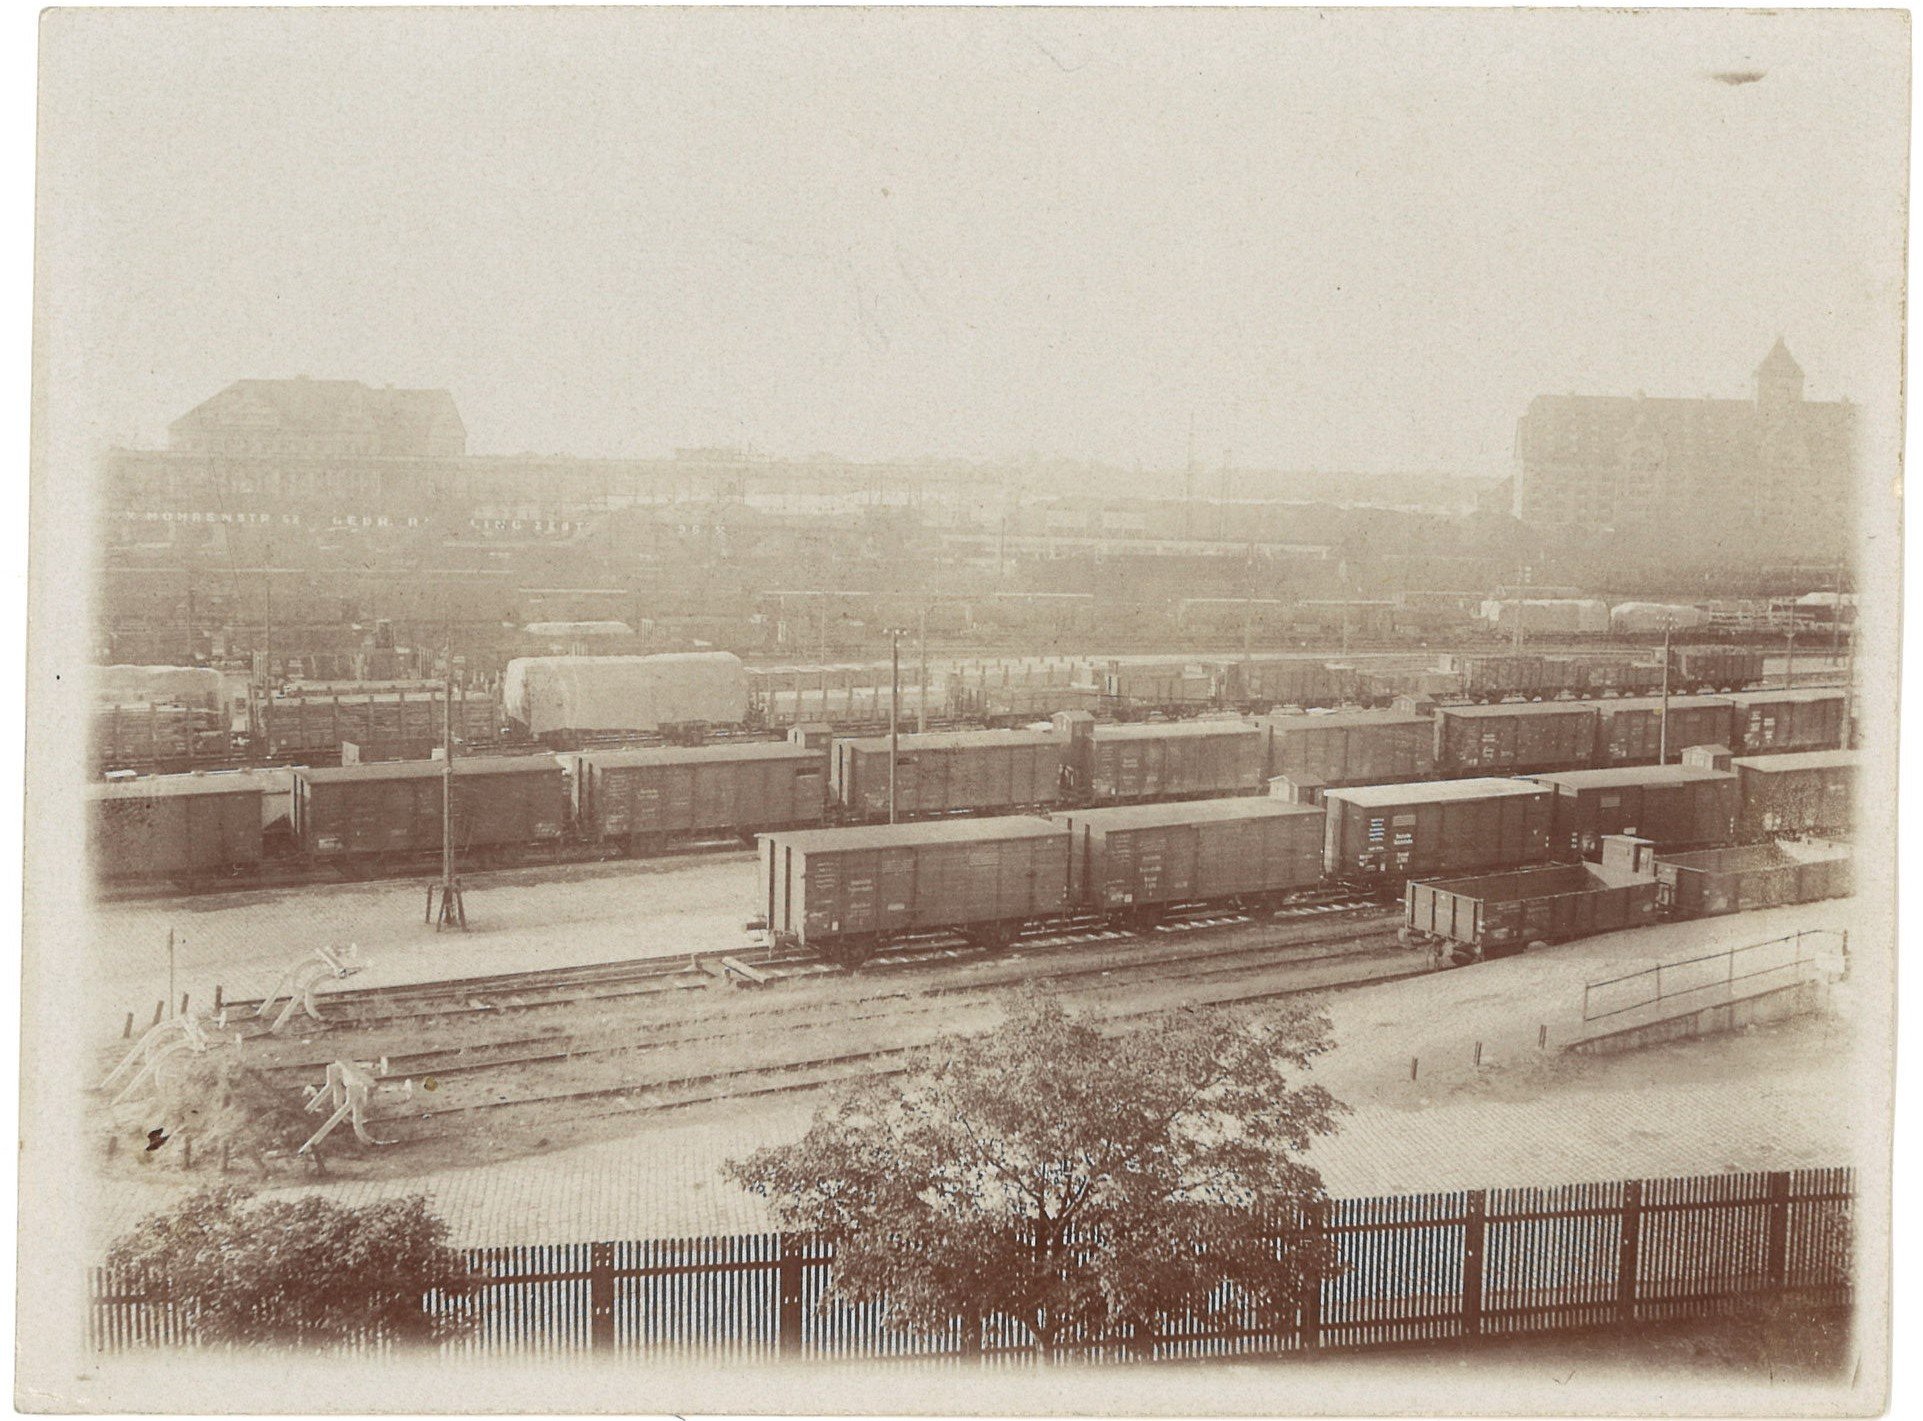 Berlin-Tiergarten: Güterbahnhof Moabit von Südwesten (Landesgeschichtliche Vereinigung für die Mark Brandenburg e.V., Archiv CC BY)